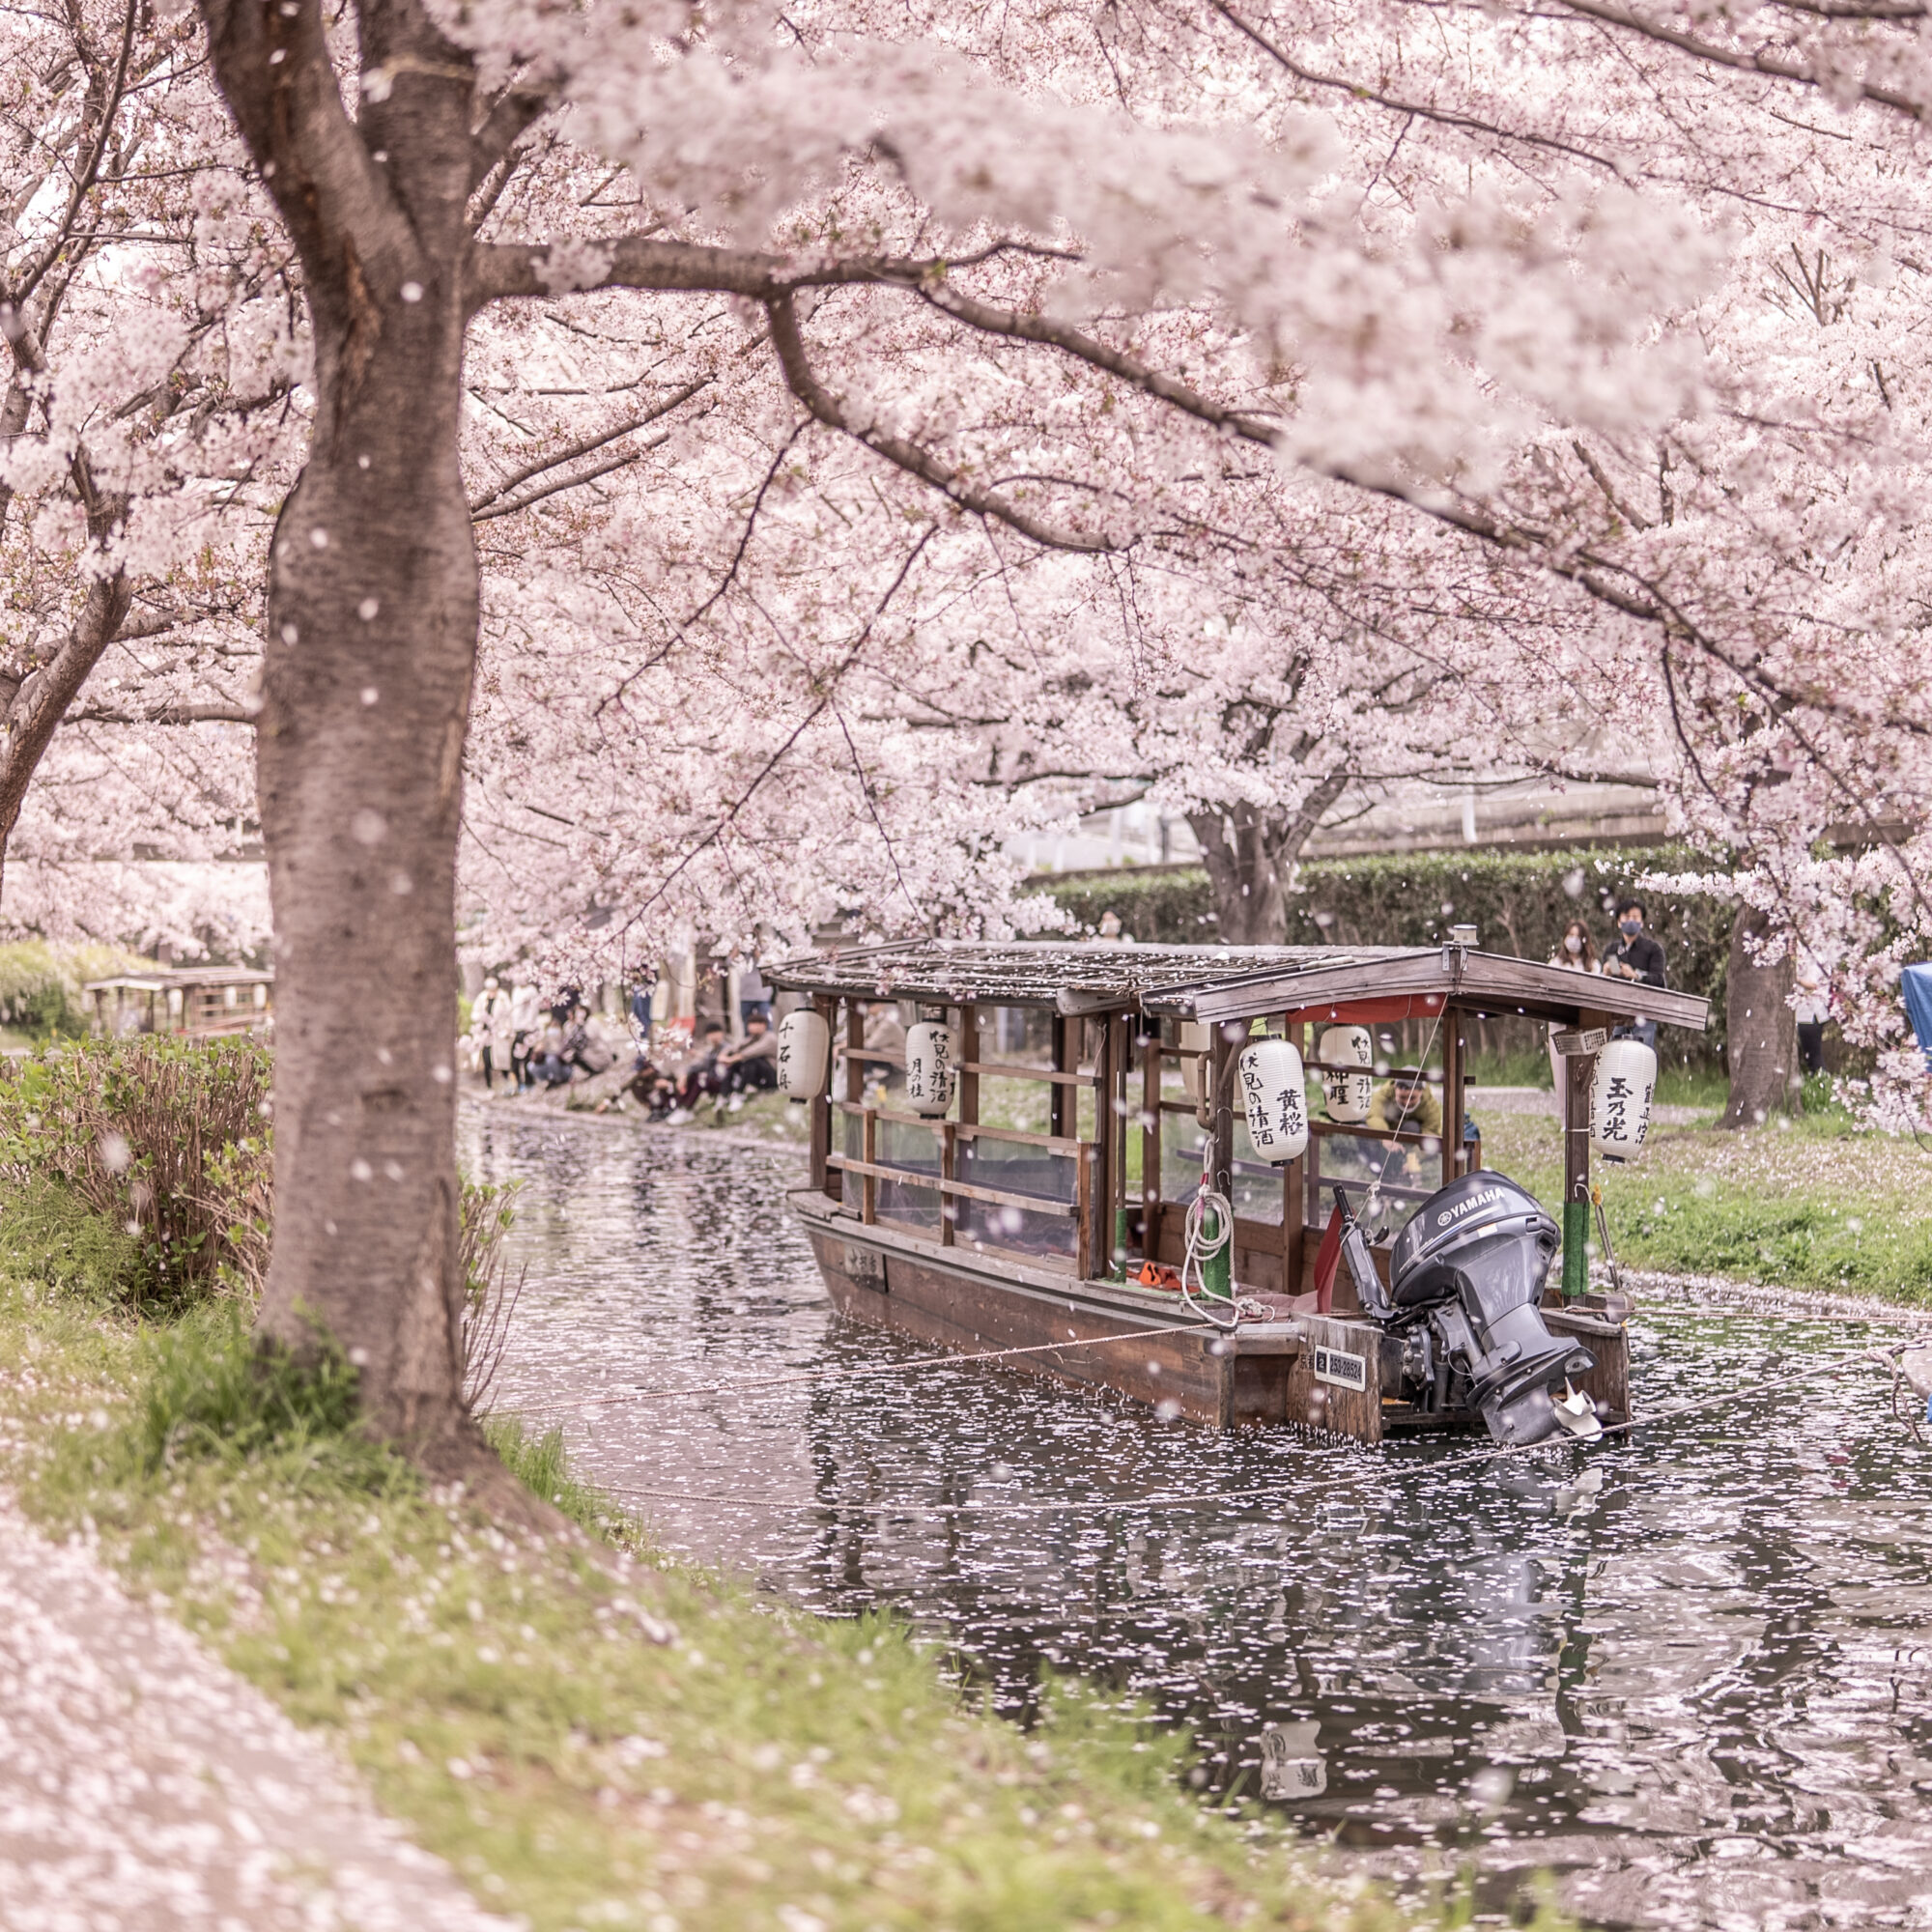 伏見十石舟と桜の木と水面に溜まった桜の花びら 2021年3月撮影